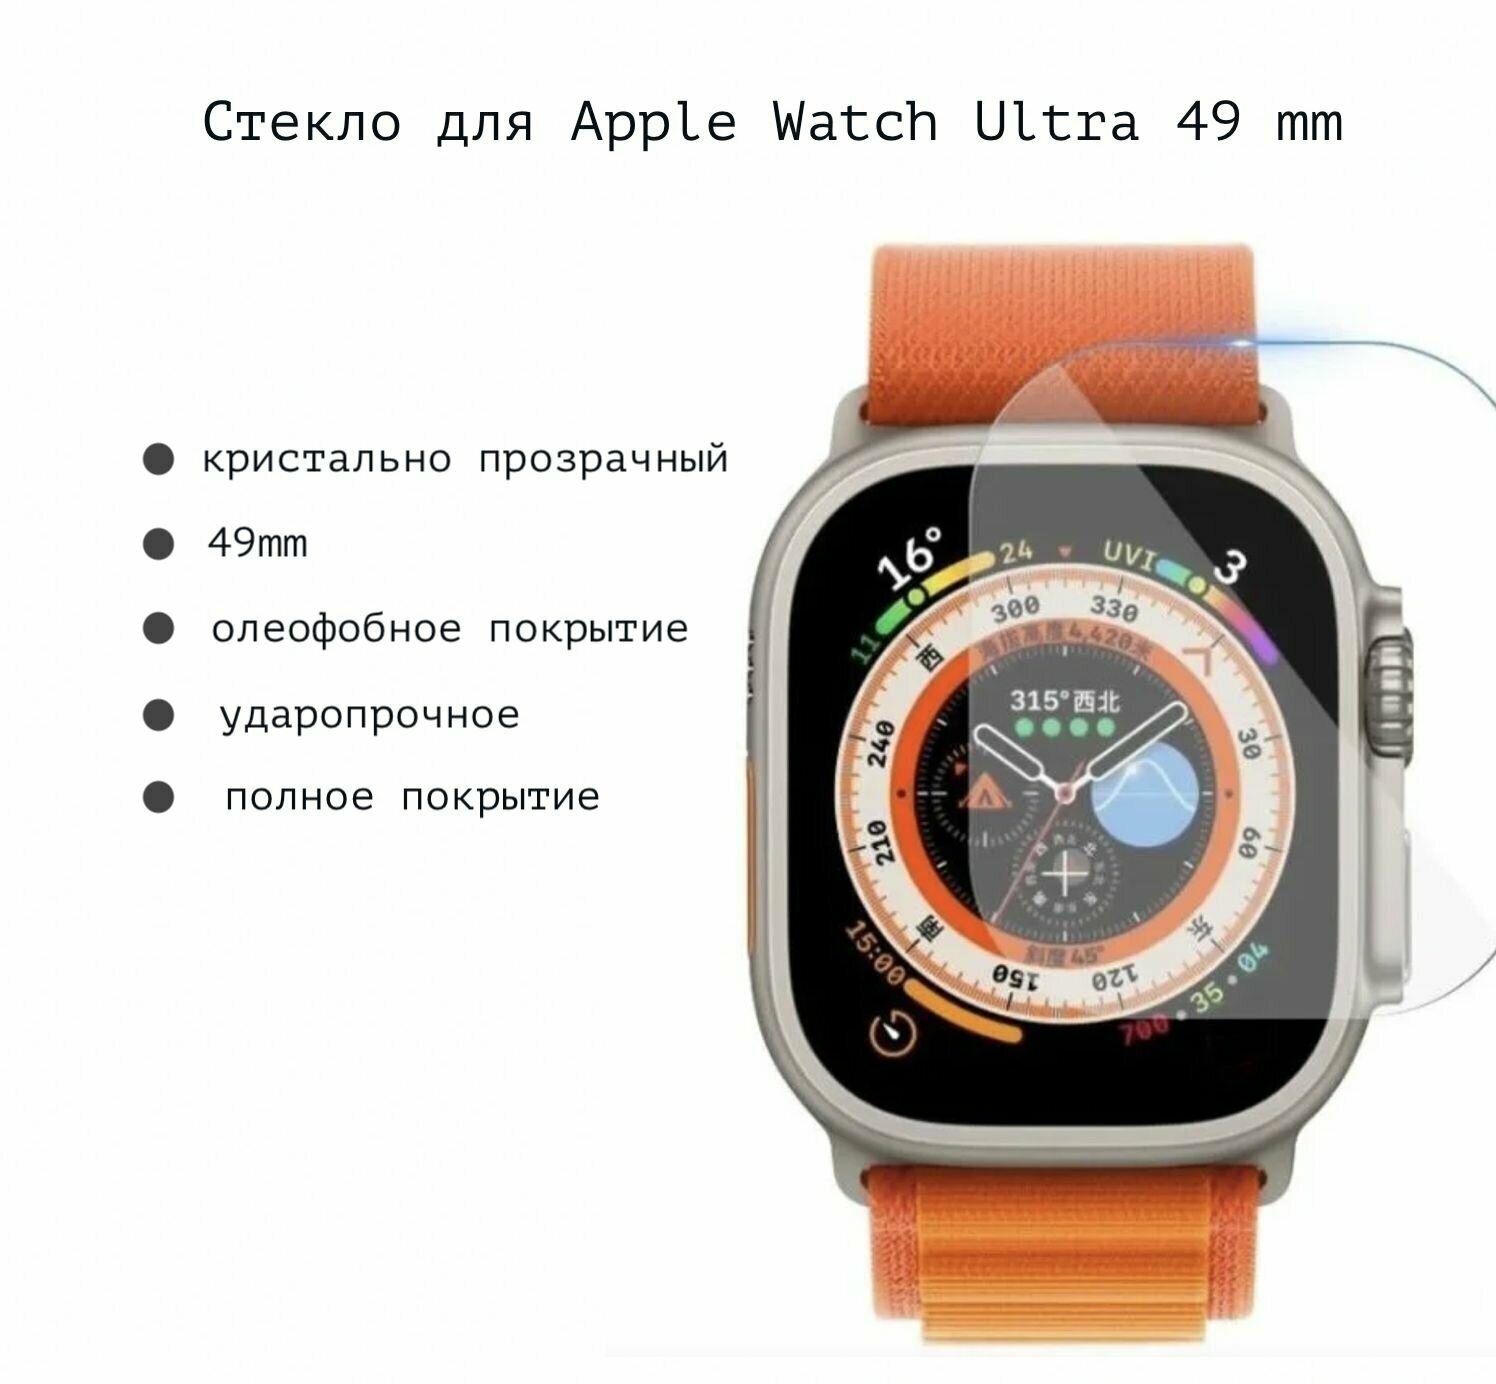 Защитное эластичное стекло - пленка полное покрытие Watch Glass для Apple Watch ULTRA (Эпл вотч ультра) на 49 мм